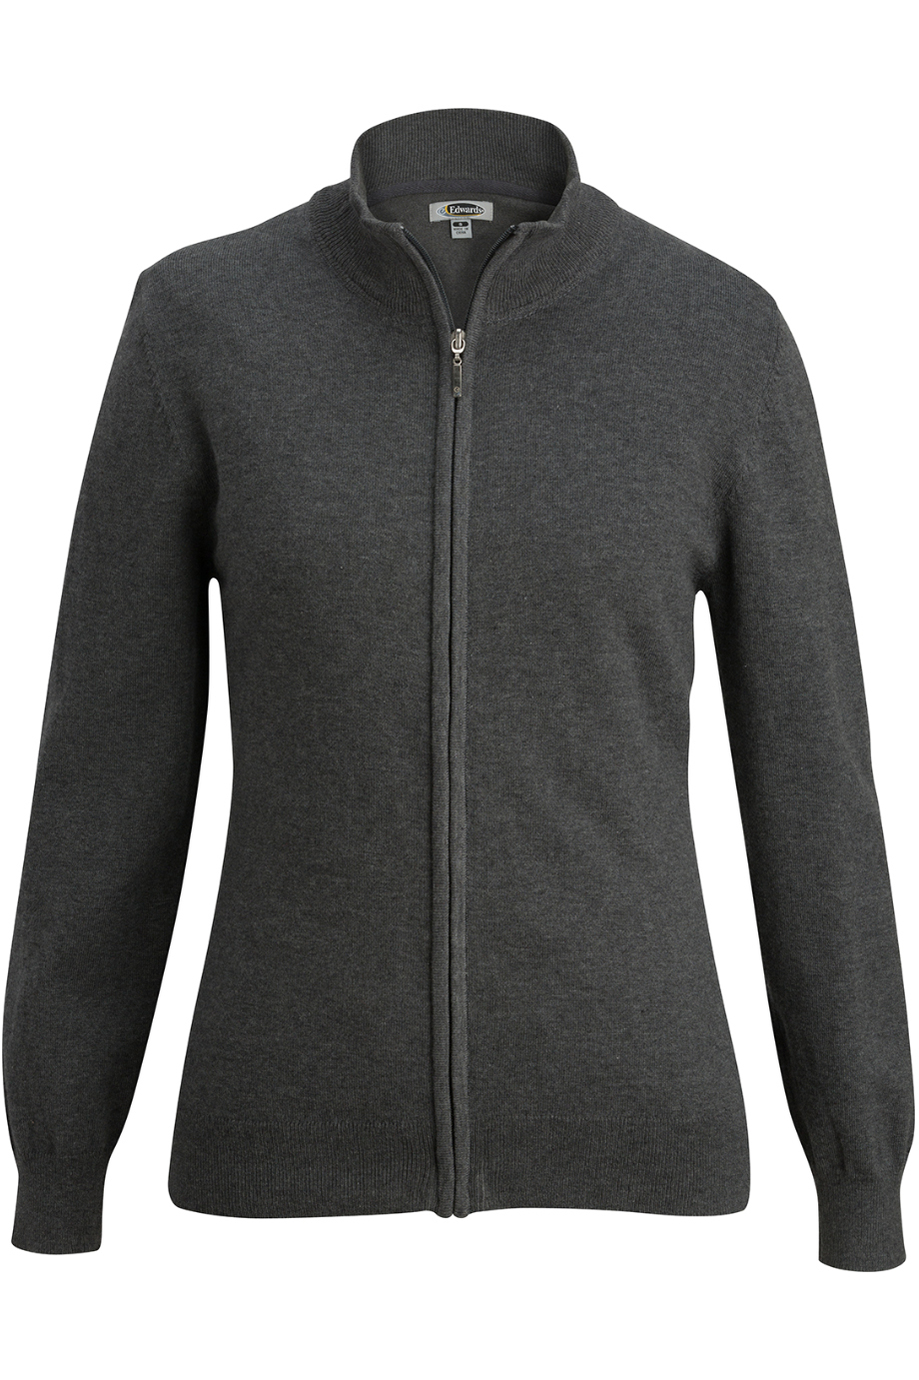 Ladies' Full-Zip Fine Gauge Cardigan Sweater 7064